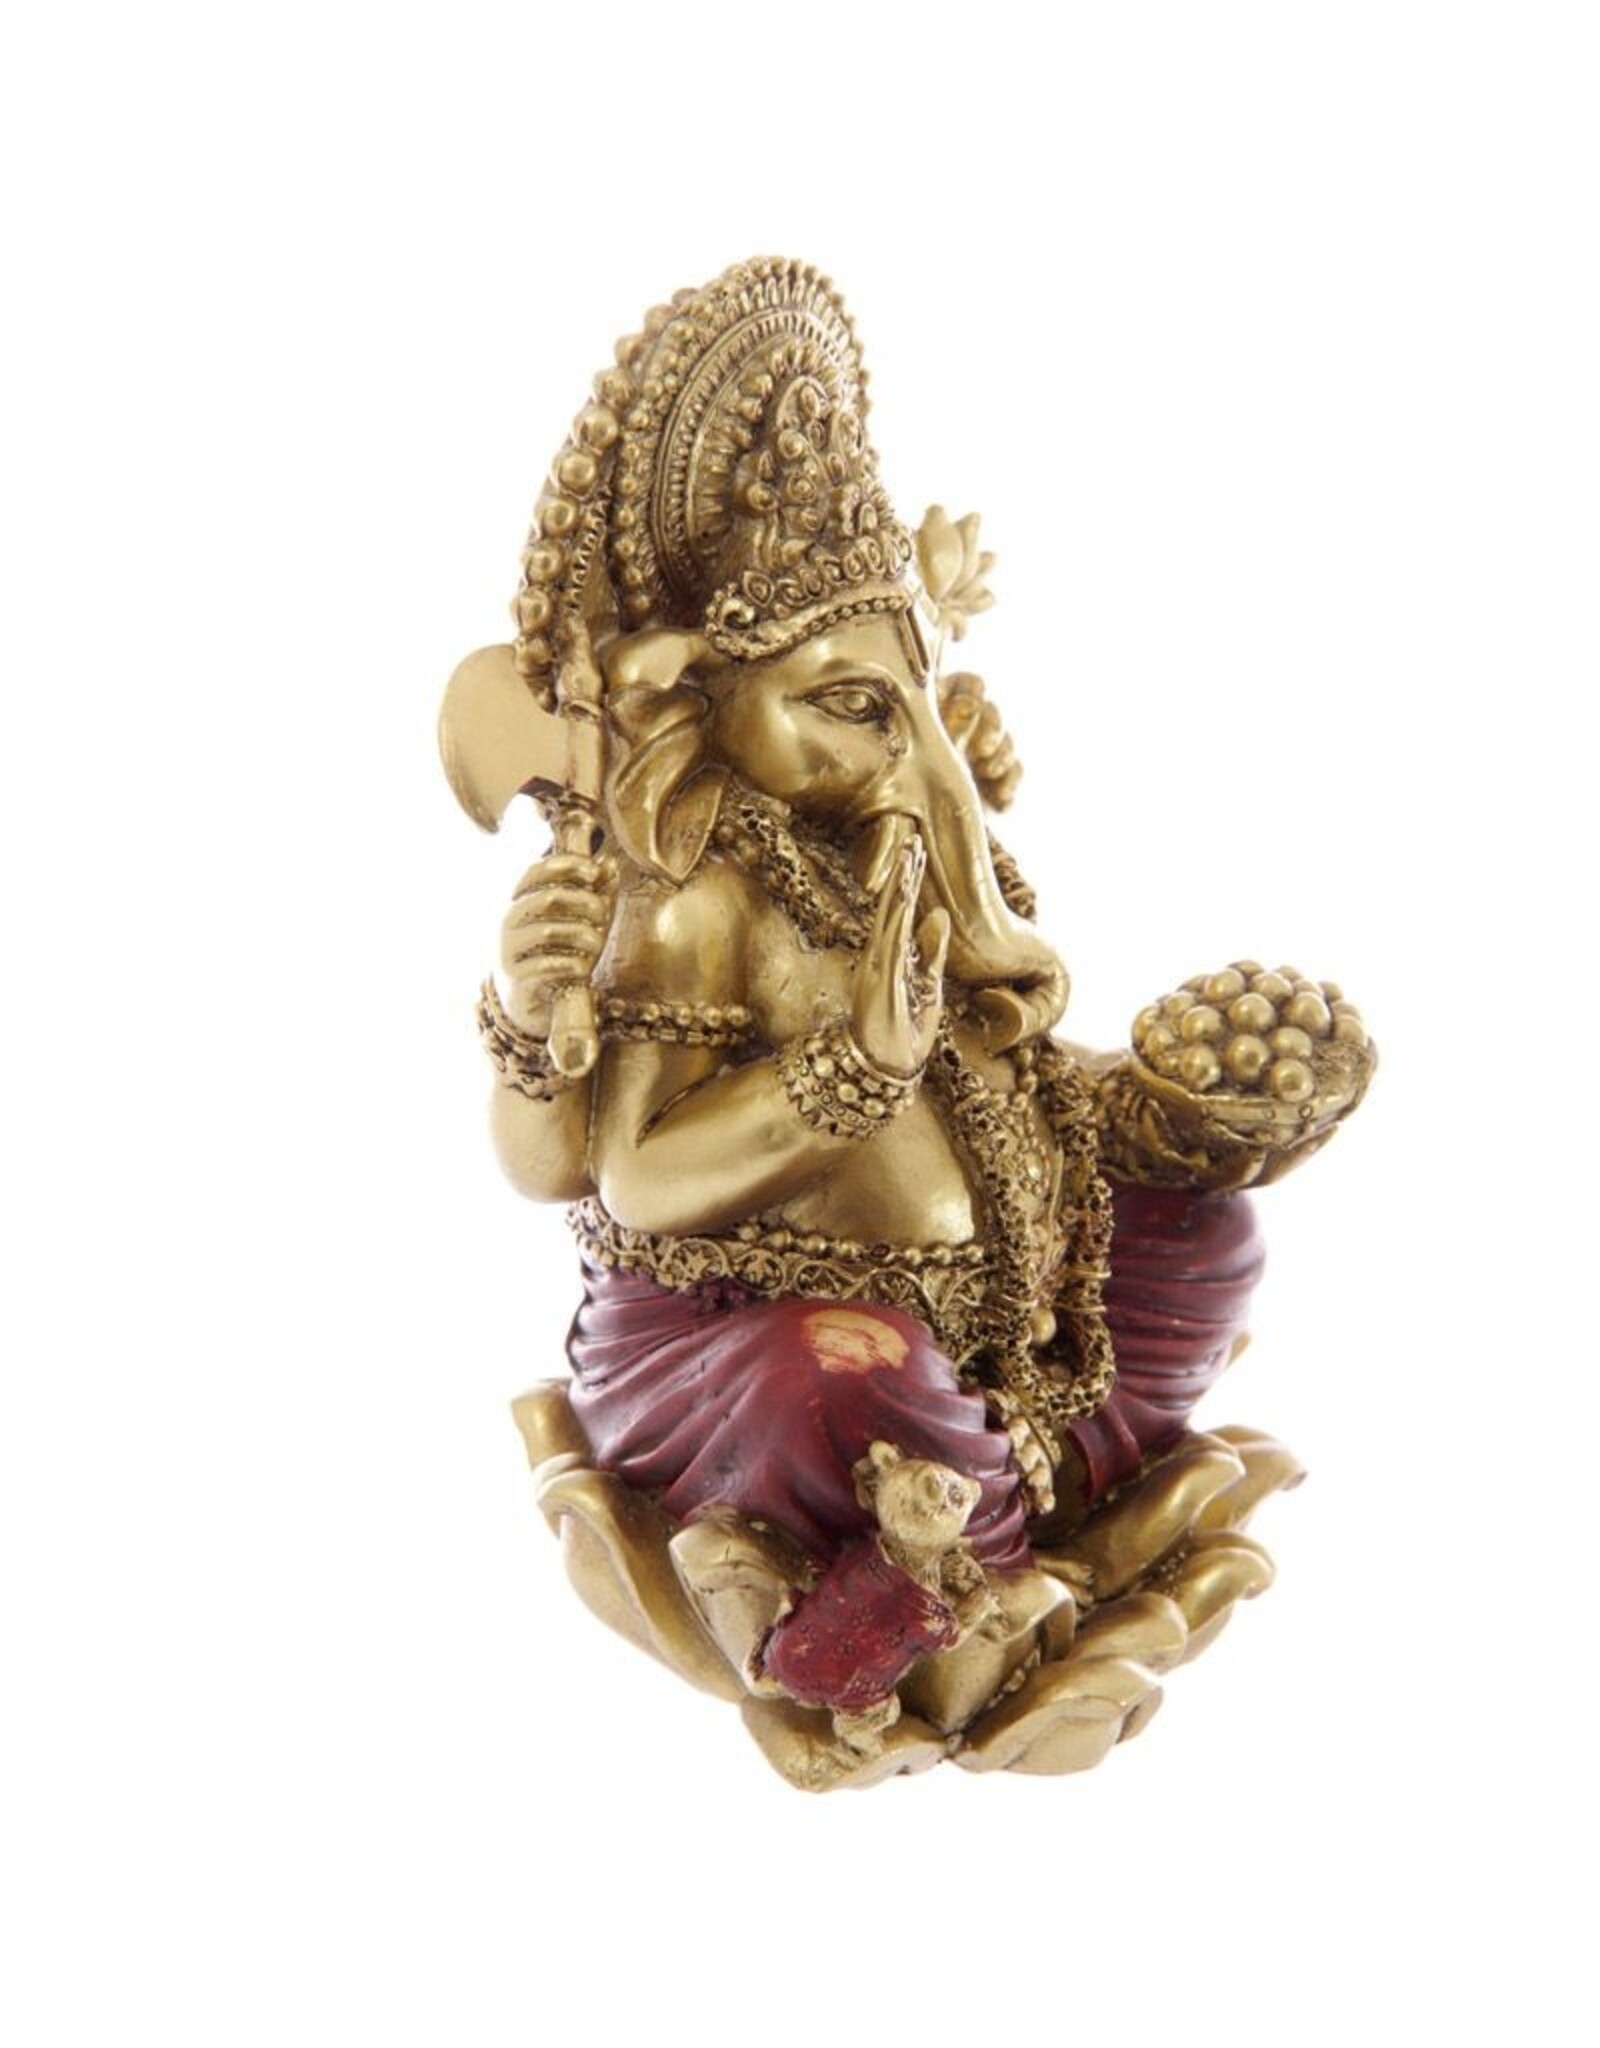 Ganesha Goud rood  16 cm